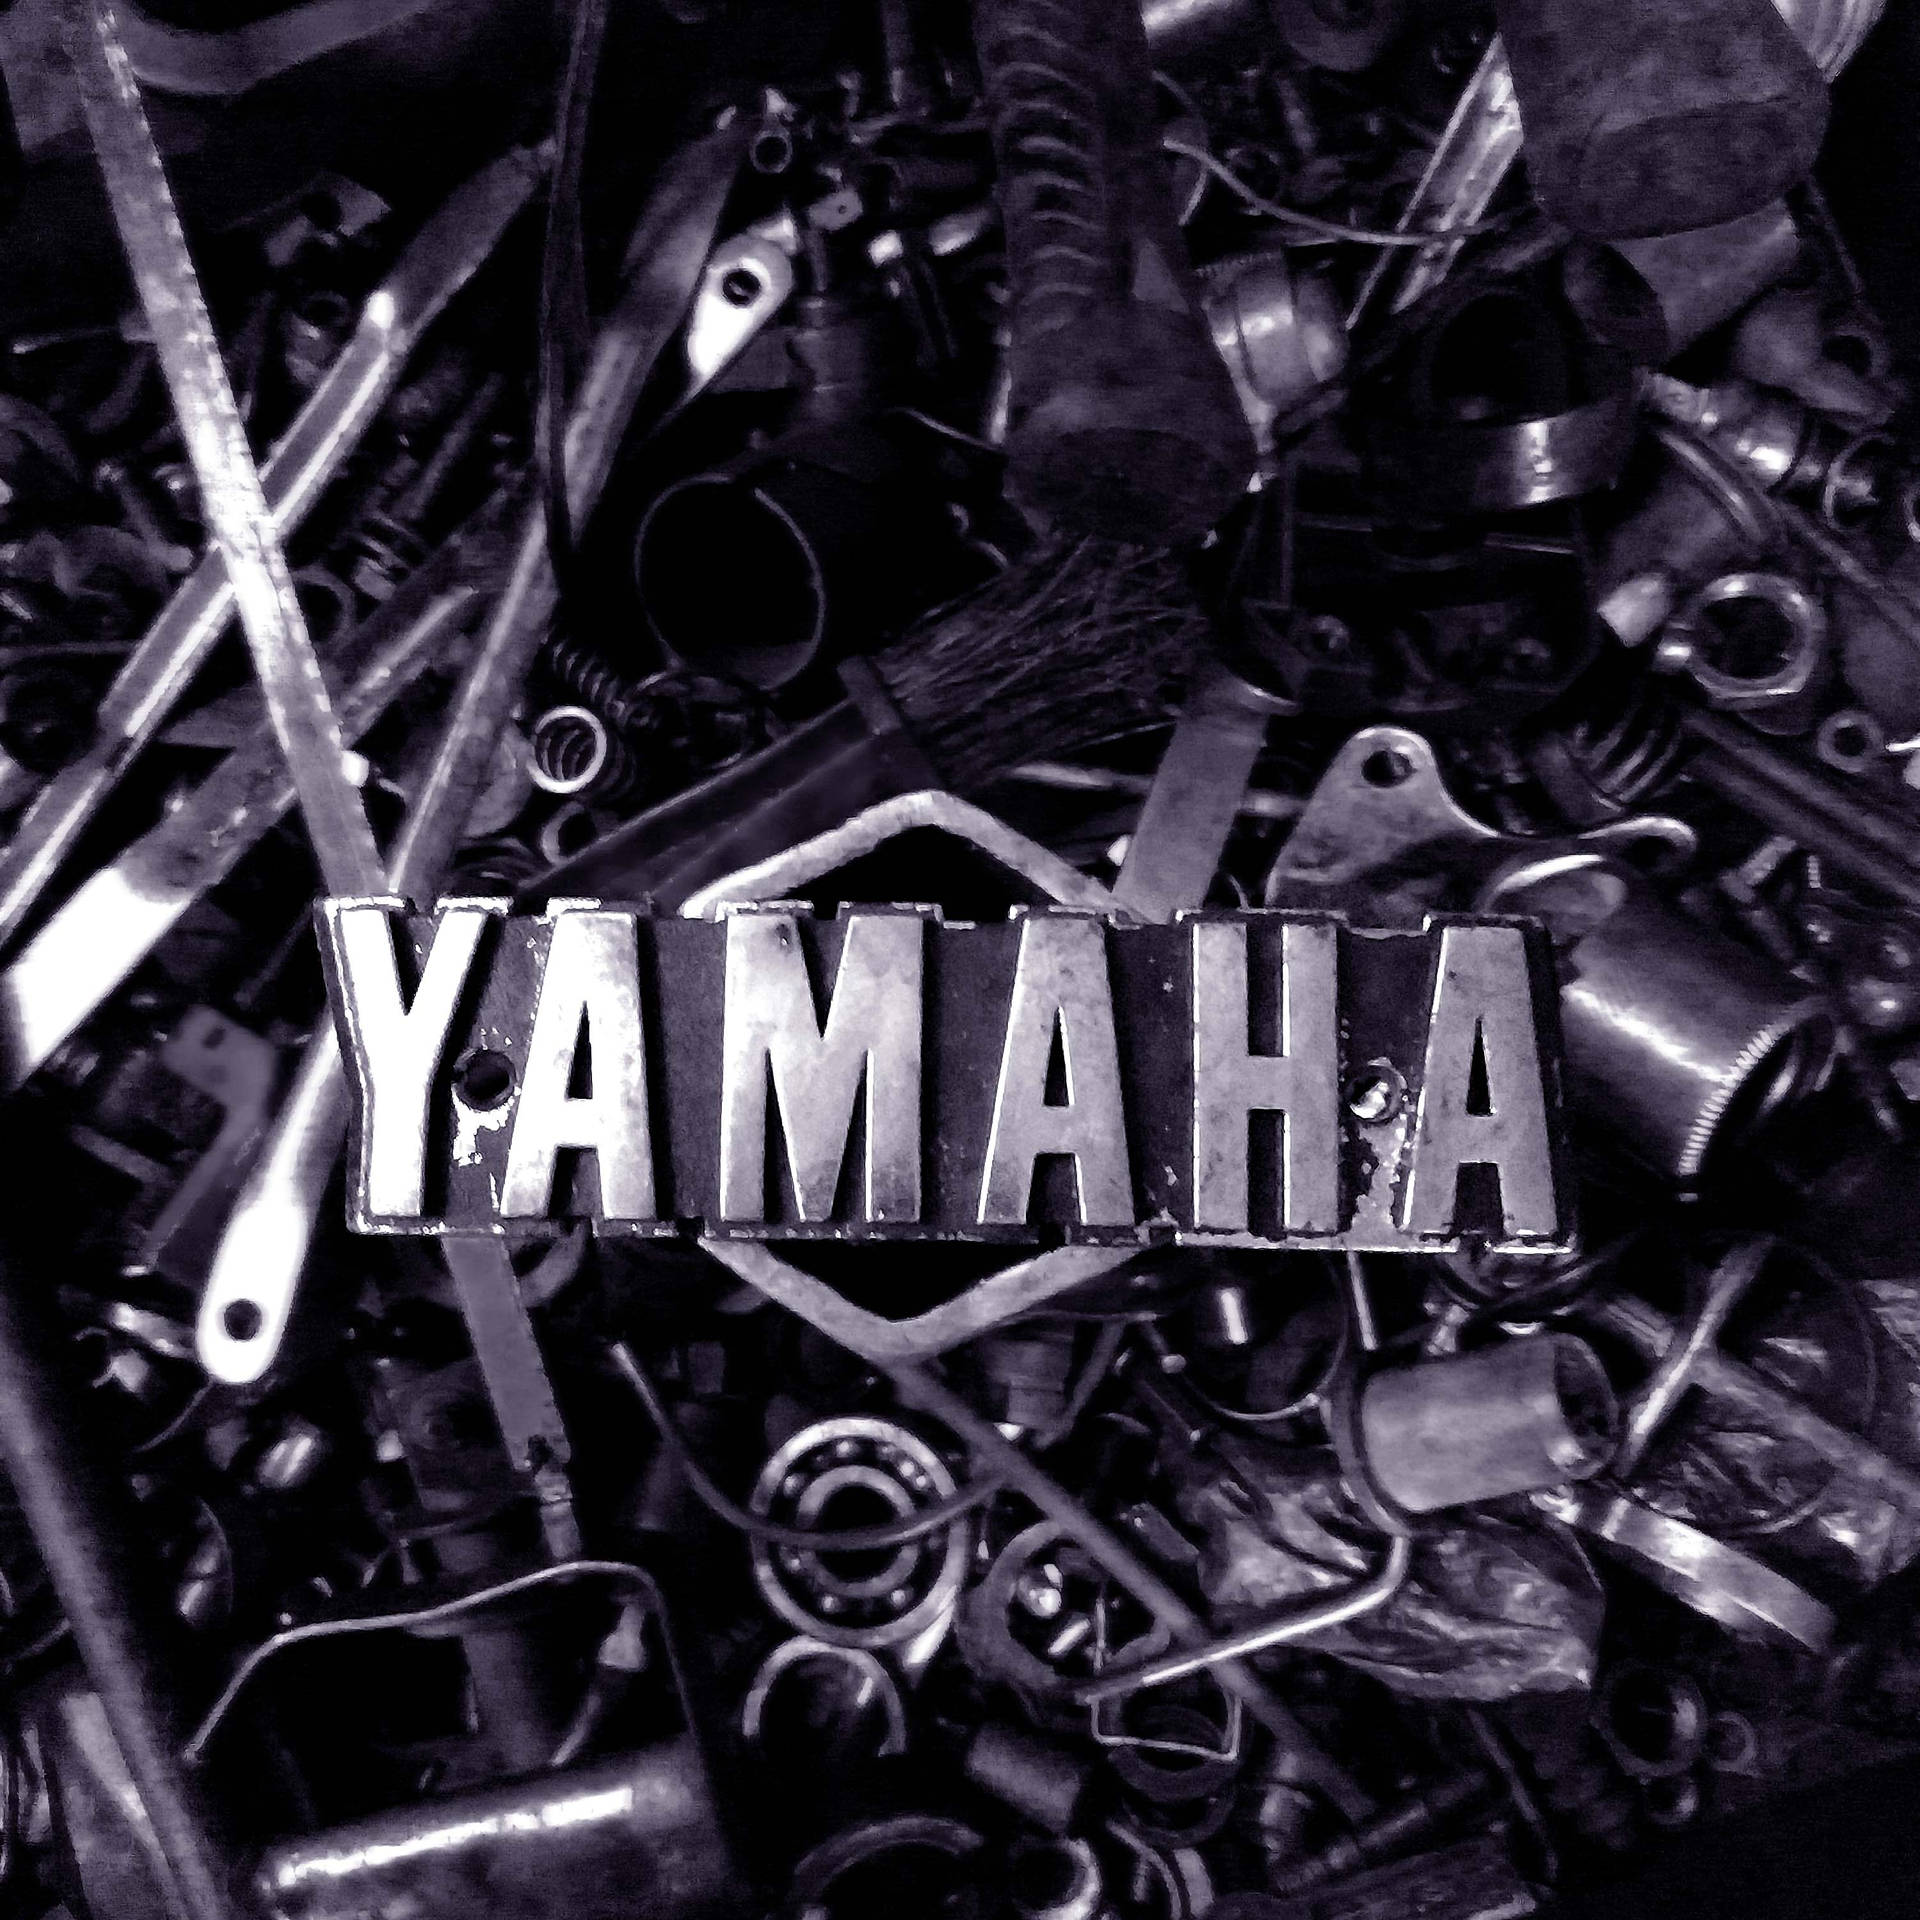 Yamaha Rx100 Motorcycle Parts Wallpaper